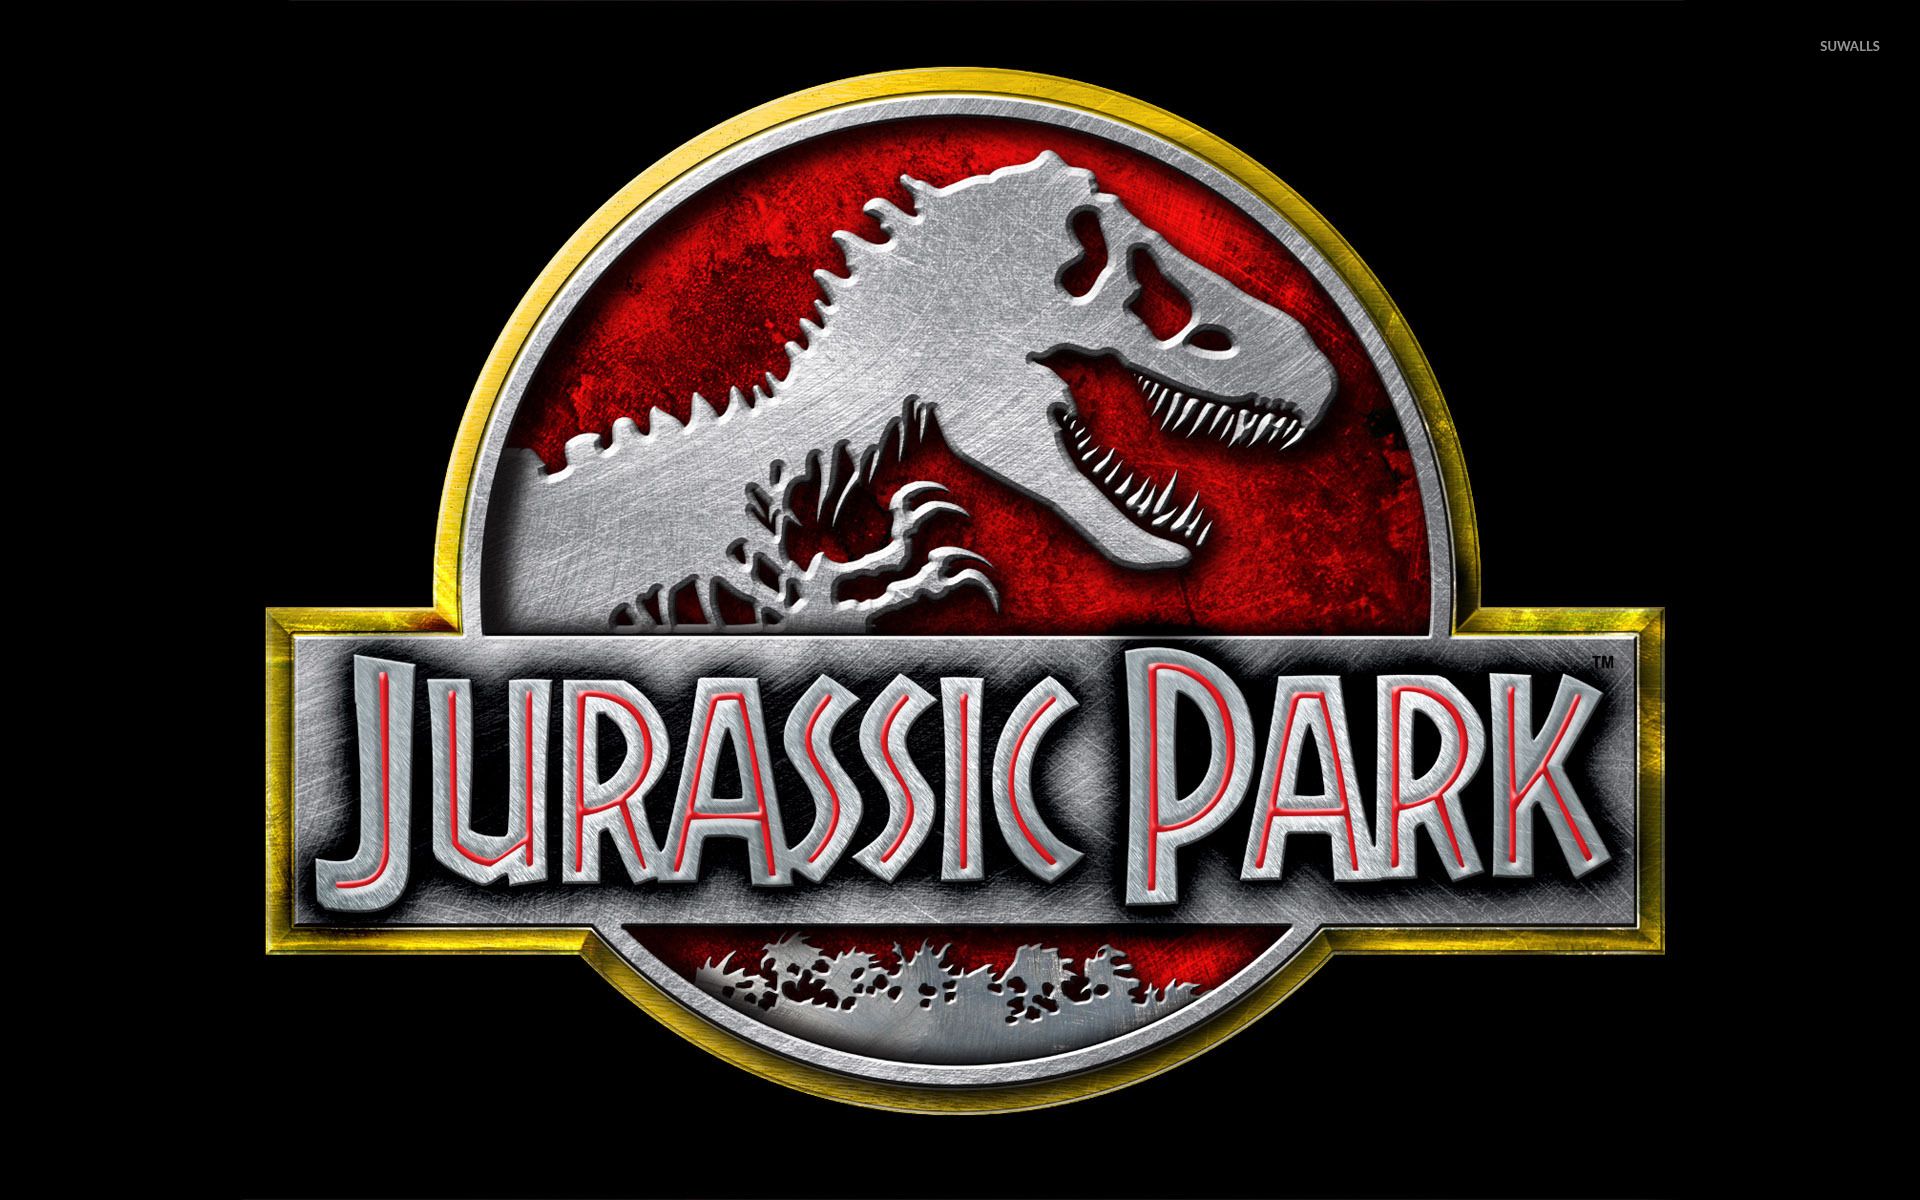 Fondo de pantalla de Jurassic Park [6] - Fondos de pantalla de películas - # 29603